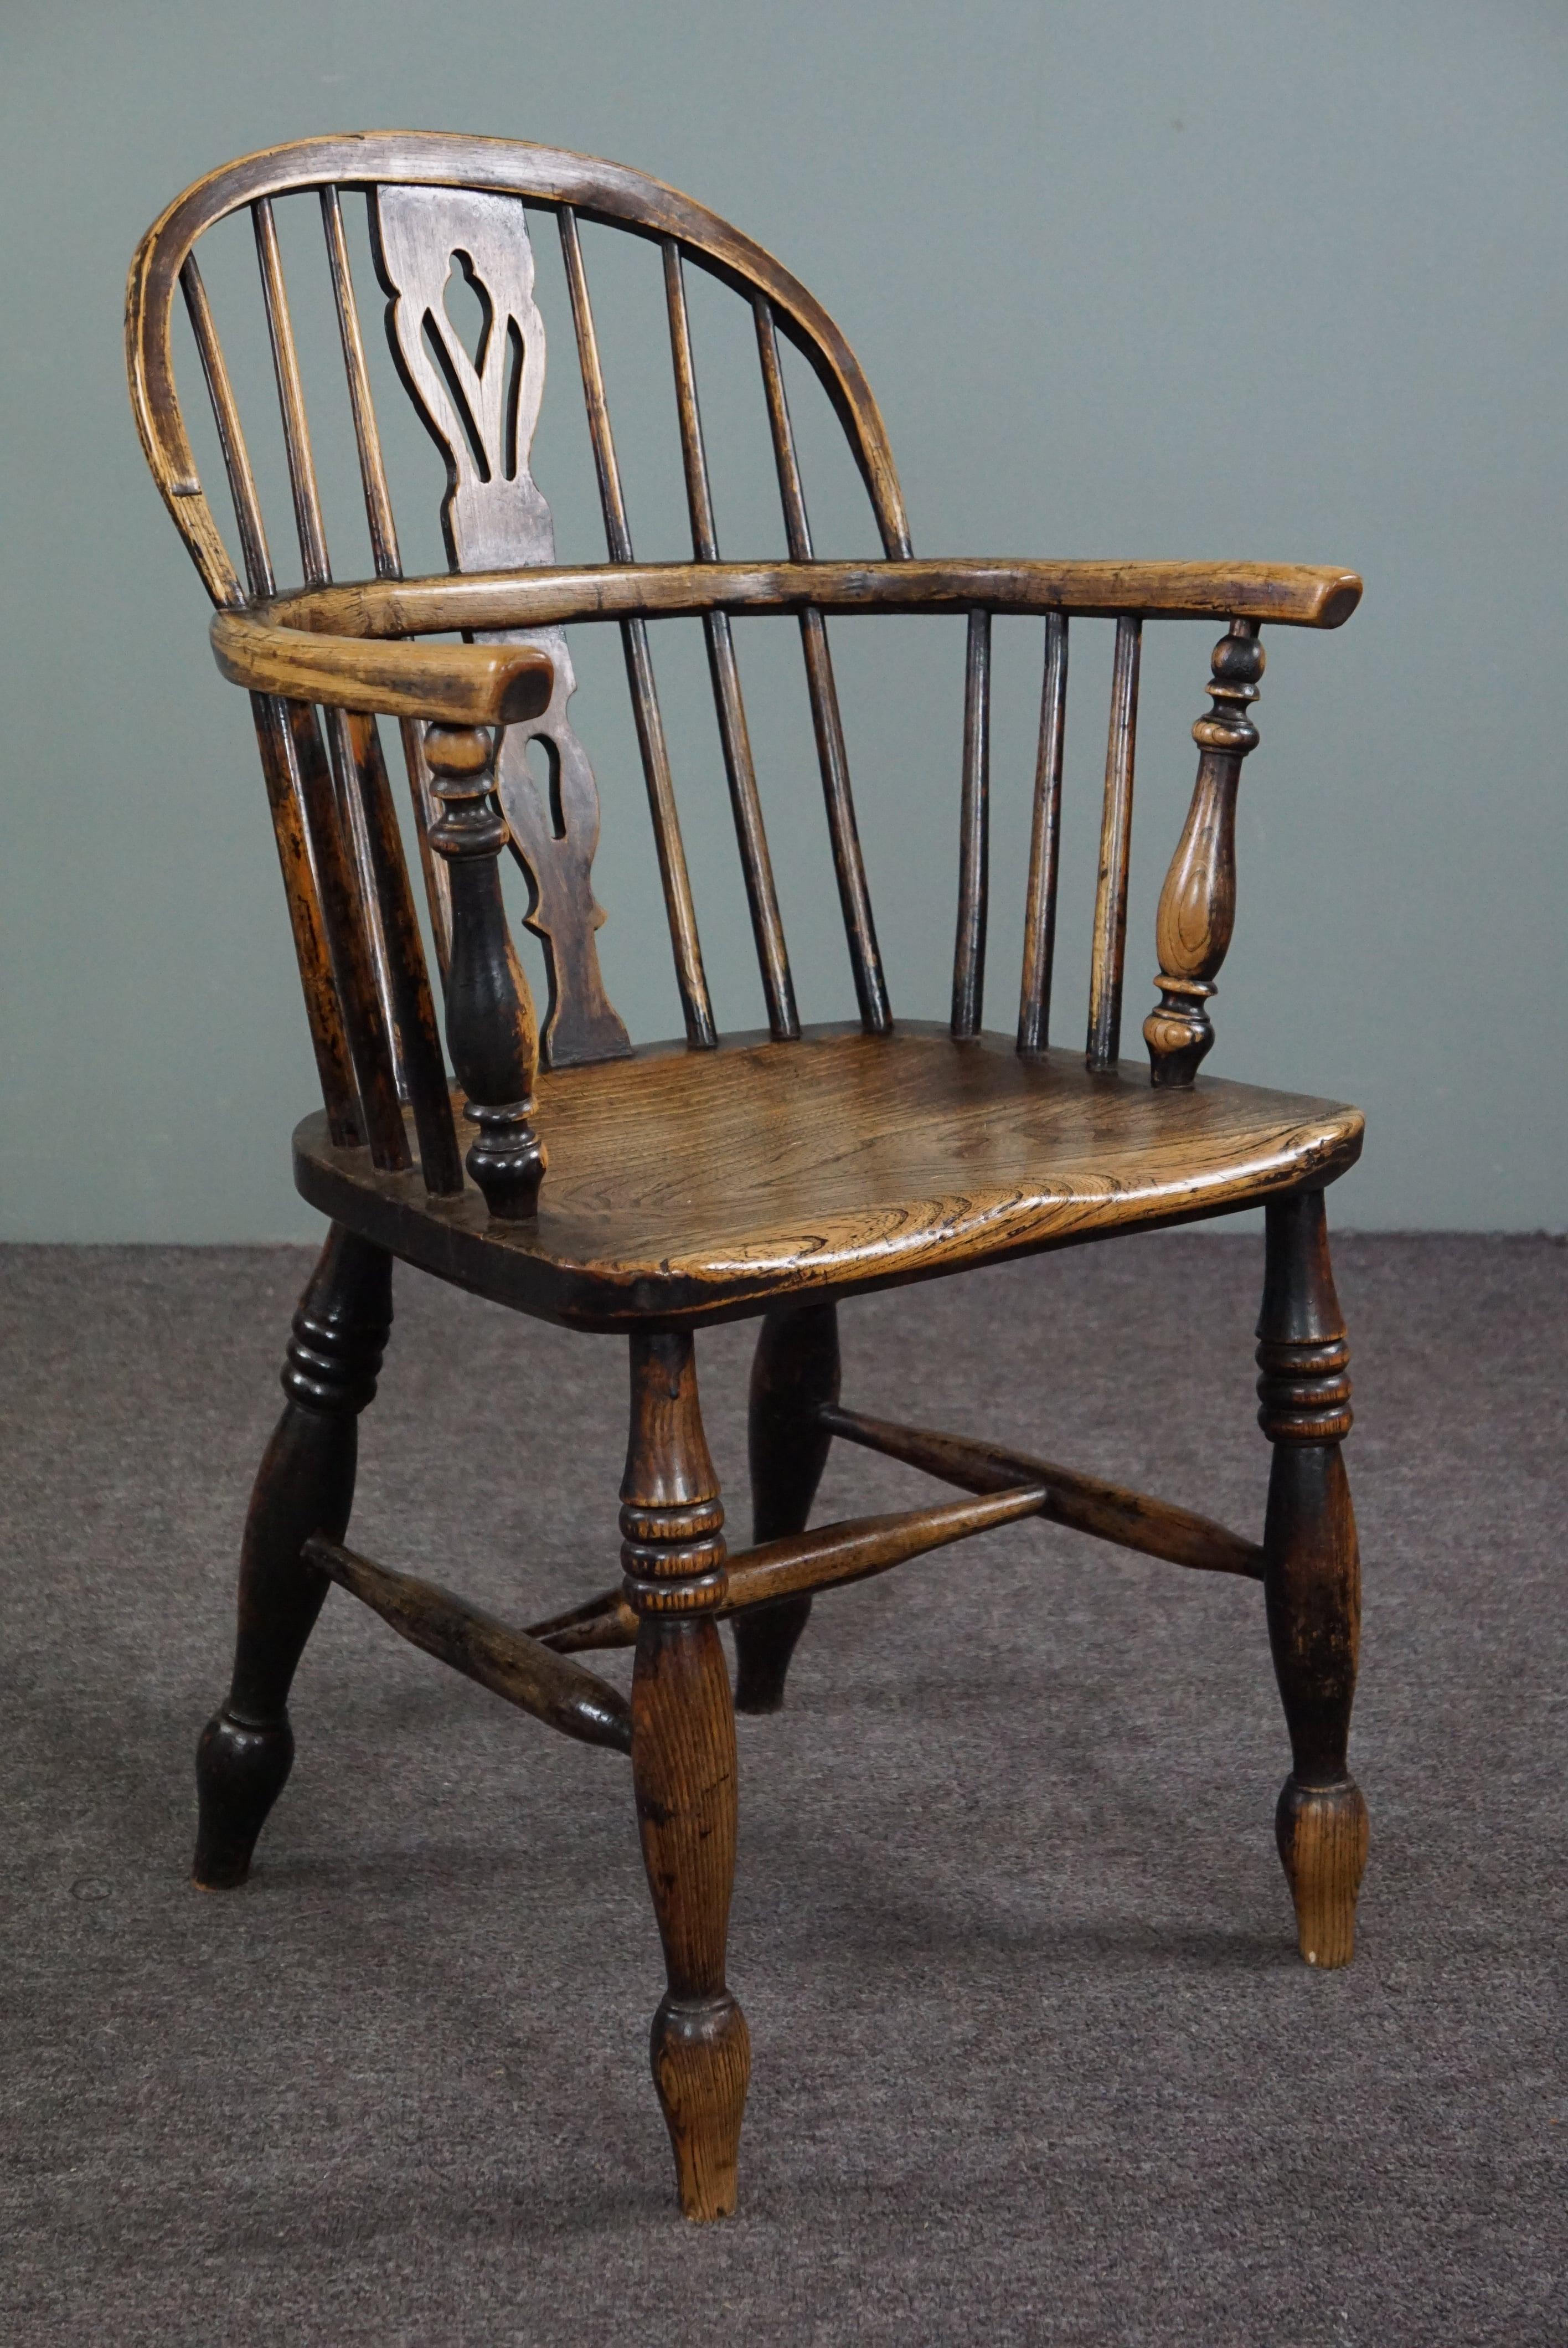 Cette belle chaise ancienne est en bois massif et présente une belle patine.

Cette élégante chaise Windsor anglaise ancienne à dossier bas du milieu du XVIIIe siècle a un dossier barré et une assise en bois massif épais magnifiquement façonnée et